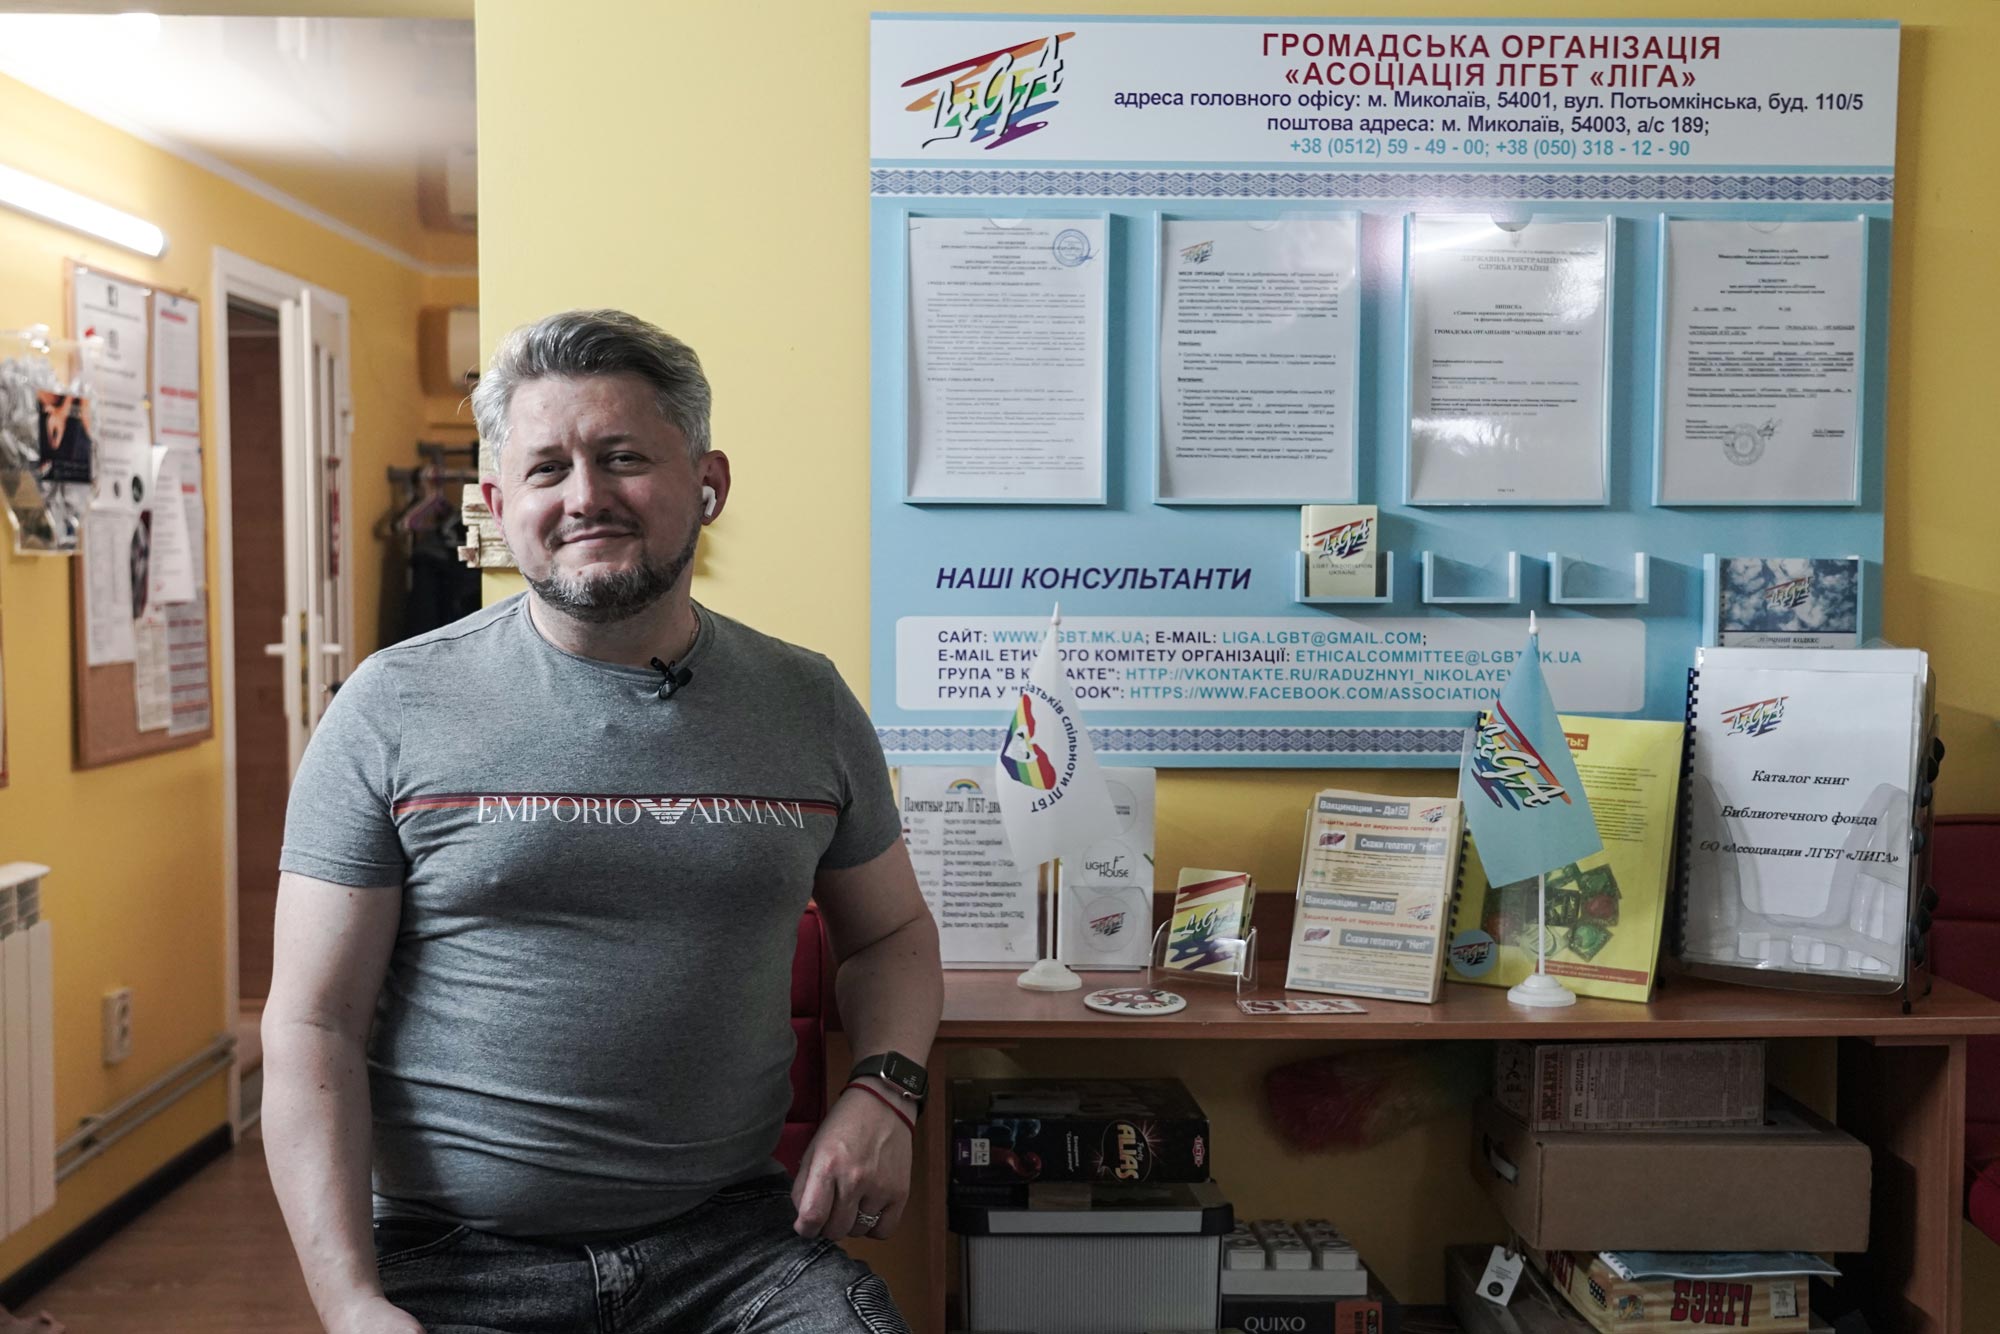 Гей- и лесби-клуб Київ отзывы - рейтинг лучших 3 компании